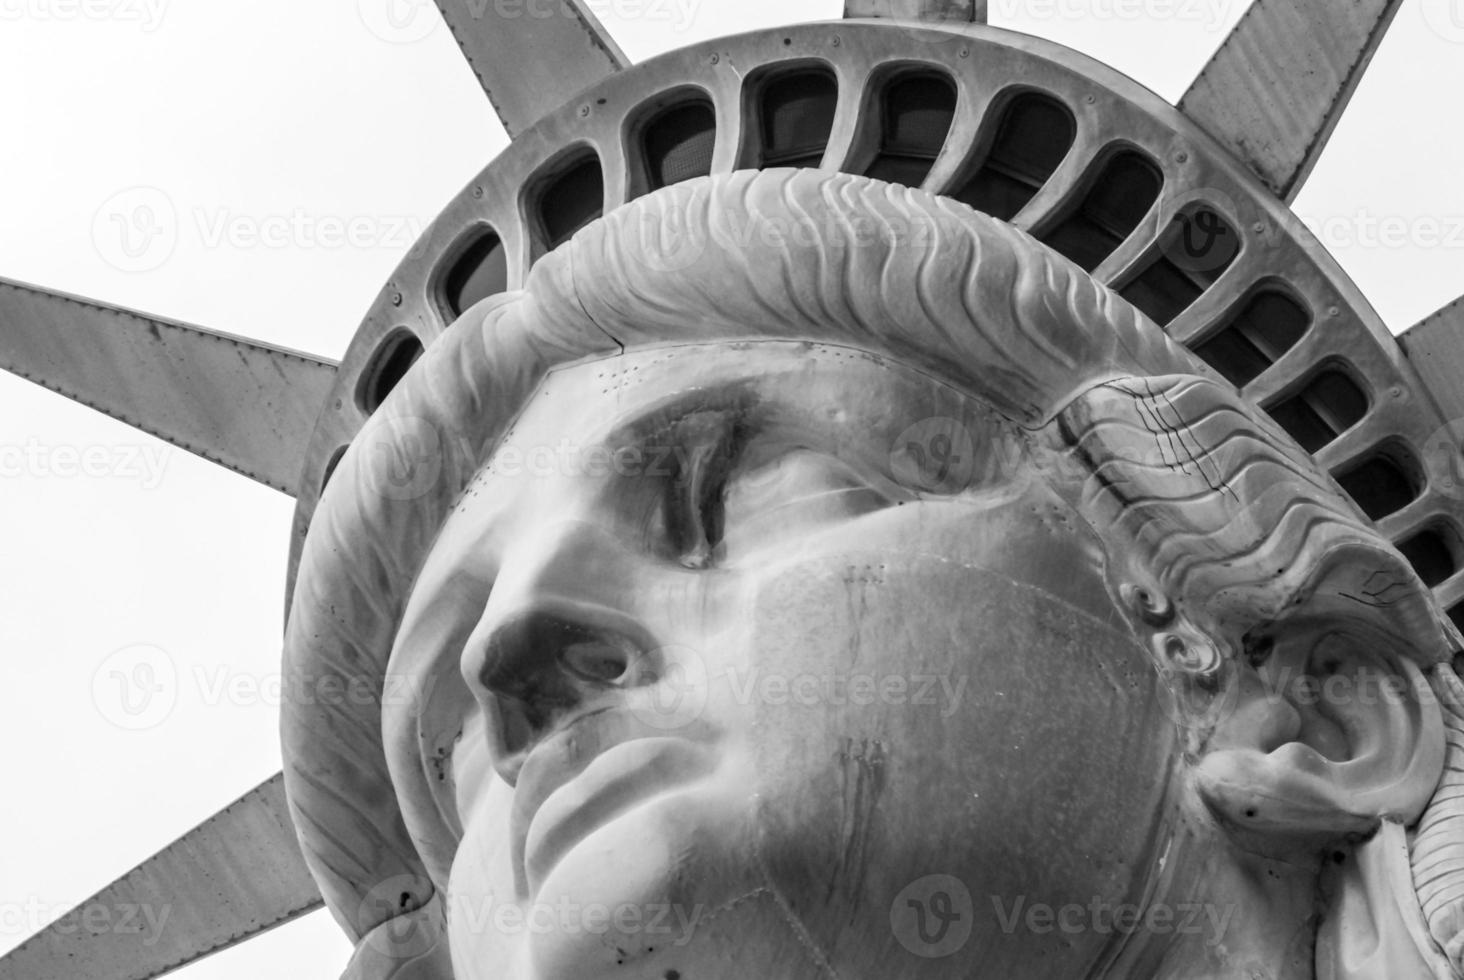 statue de la liberté à new york. photo